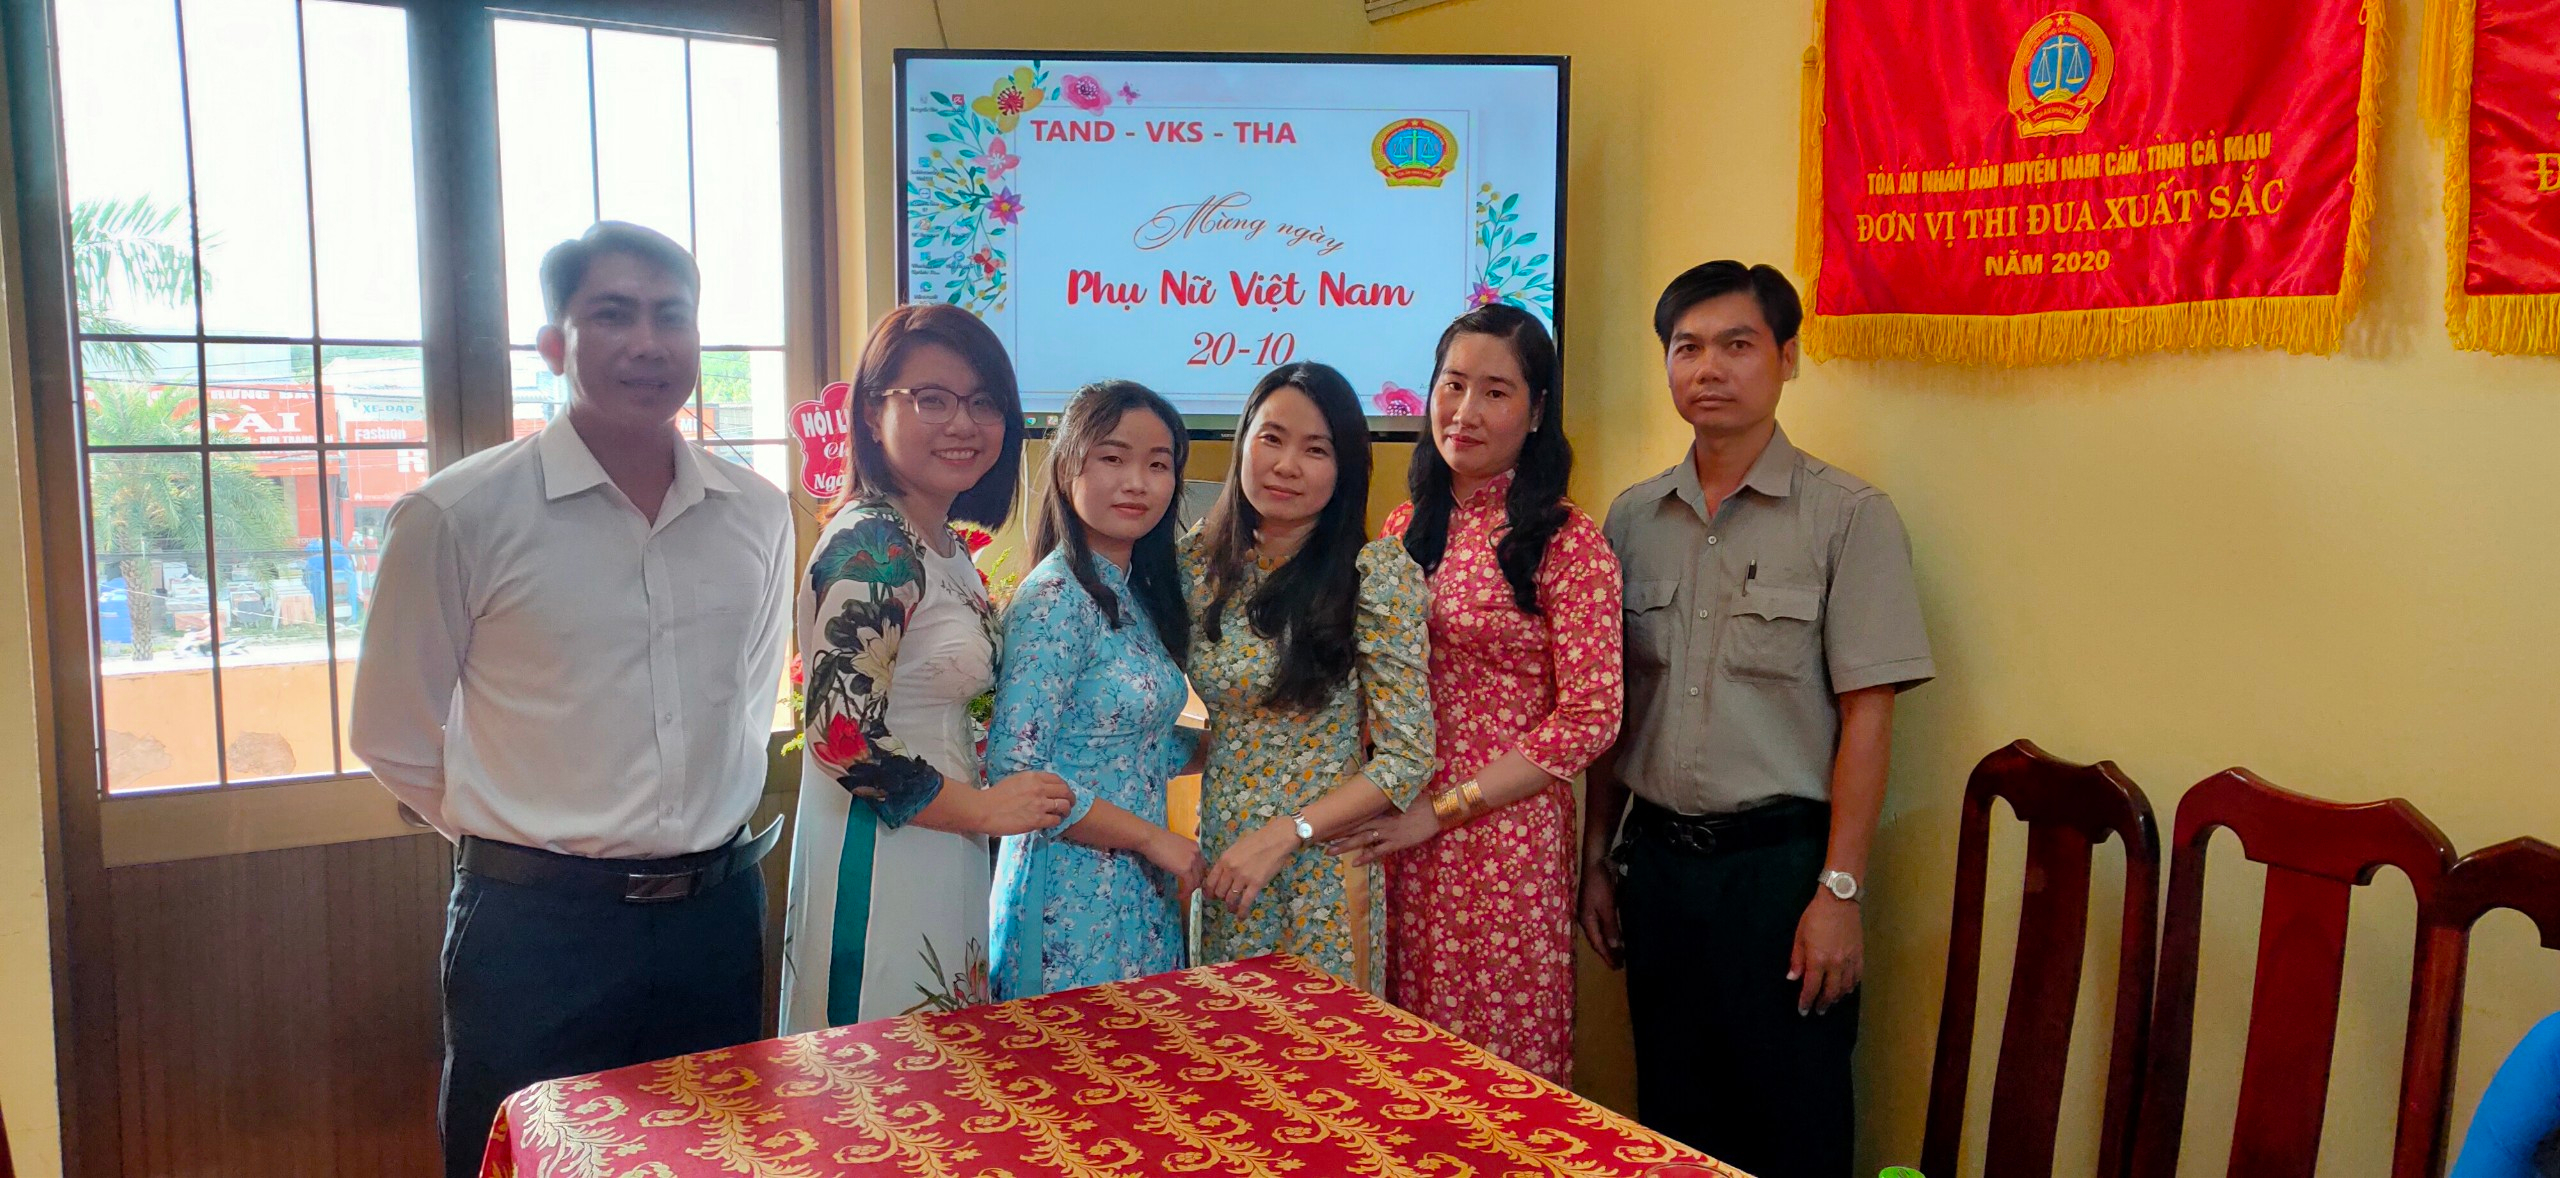 Phụ nữ đồng lòng quyết tâm xứng đáng với 8 chữ vàng mà Chủ tịch Hồ Chí Minh đã tặng